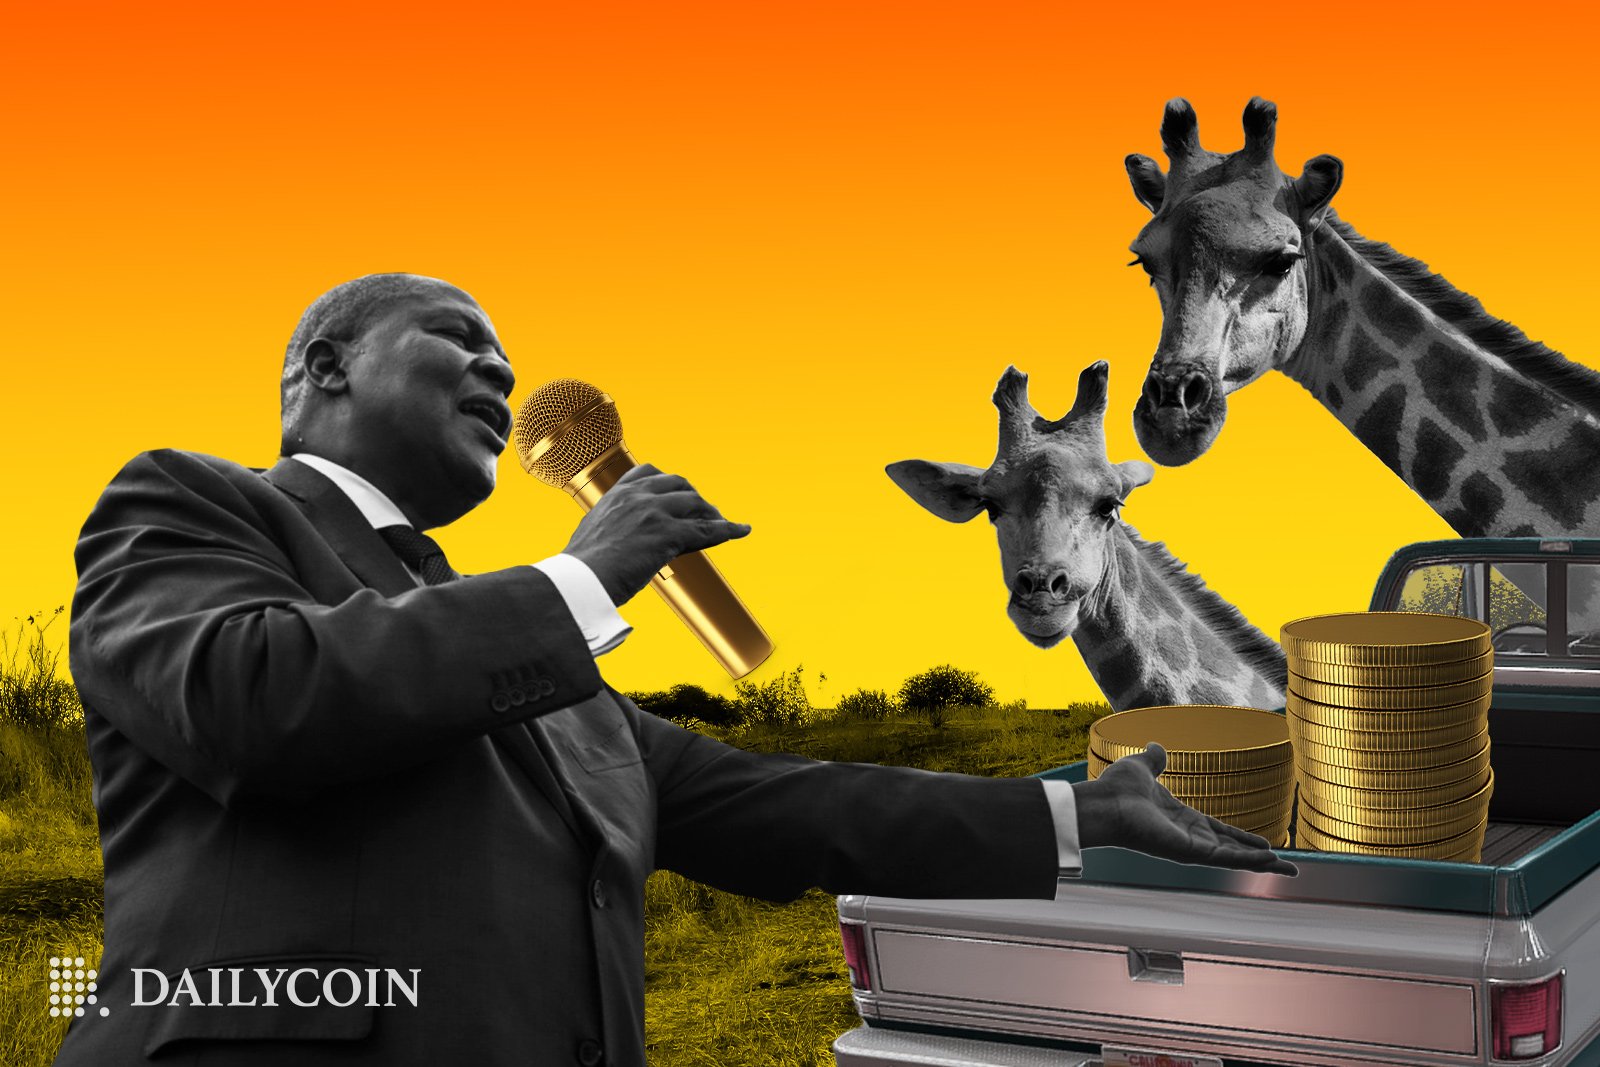 Orta Afrika Cumhuriyeti Cumhurbaşkanı elinde altın bir mikrofonla meraklı zürafalara konuşma yapıyor.